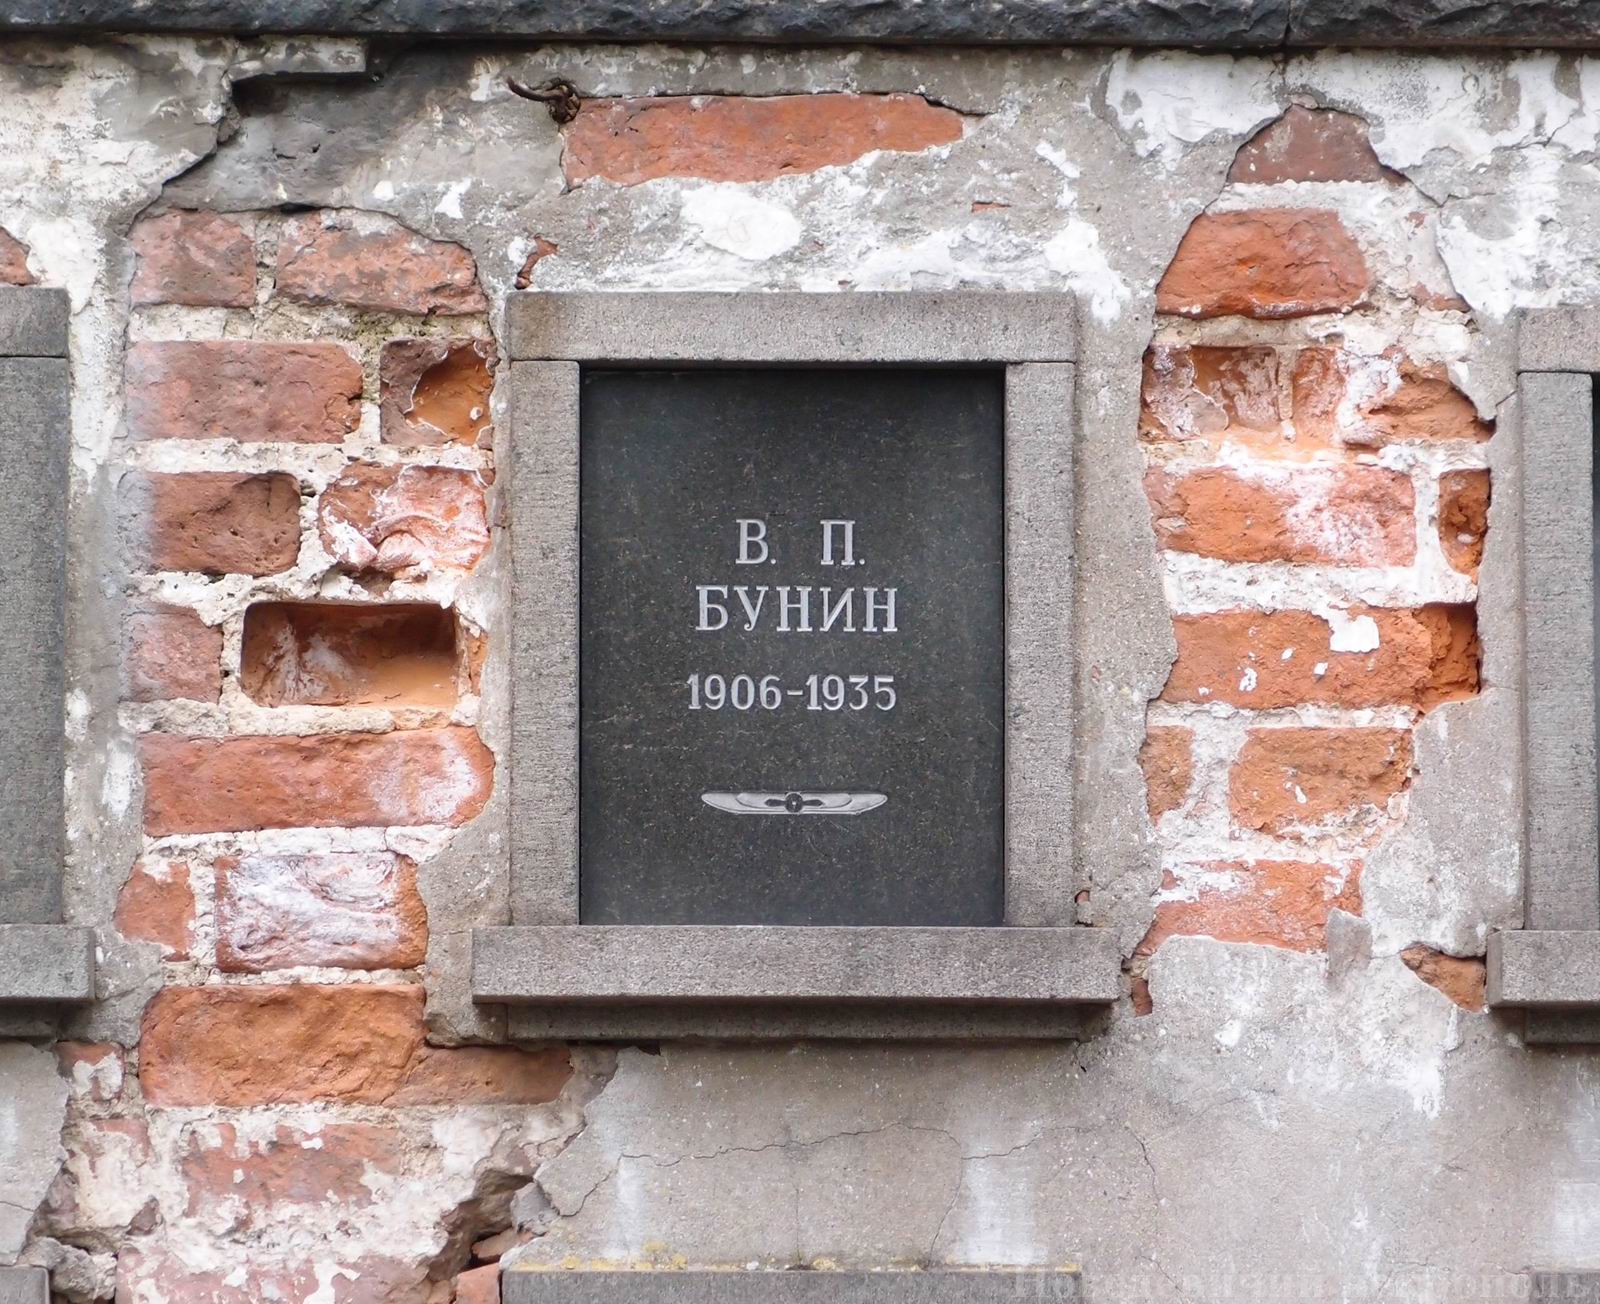 Плита на нише Бунина В.П. (1906-1935), на Новодевичьем кладбище (колумбарий [3]-8). Нажмите левую кнопку мыши, чтобы увидеть общий вид секции.